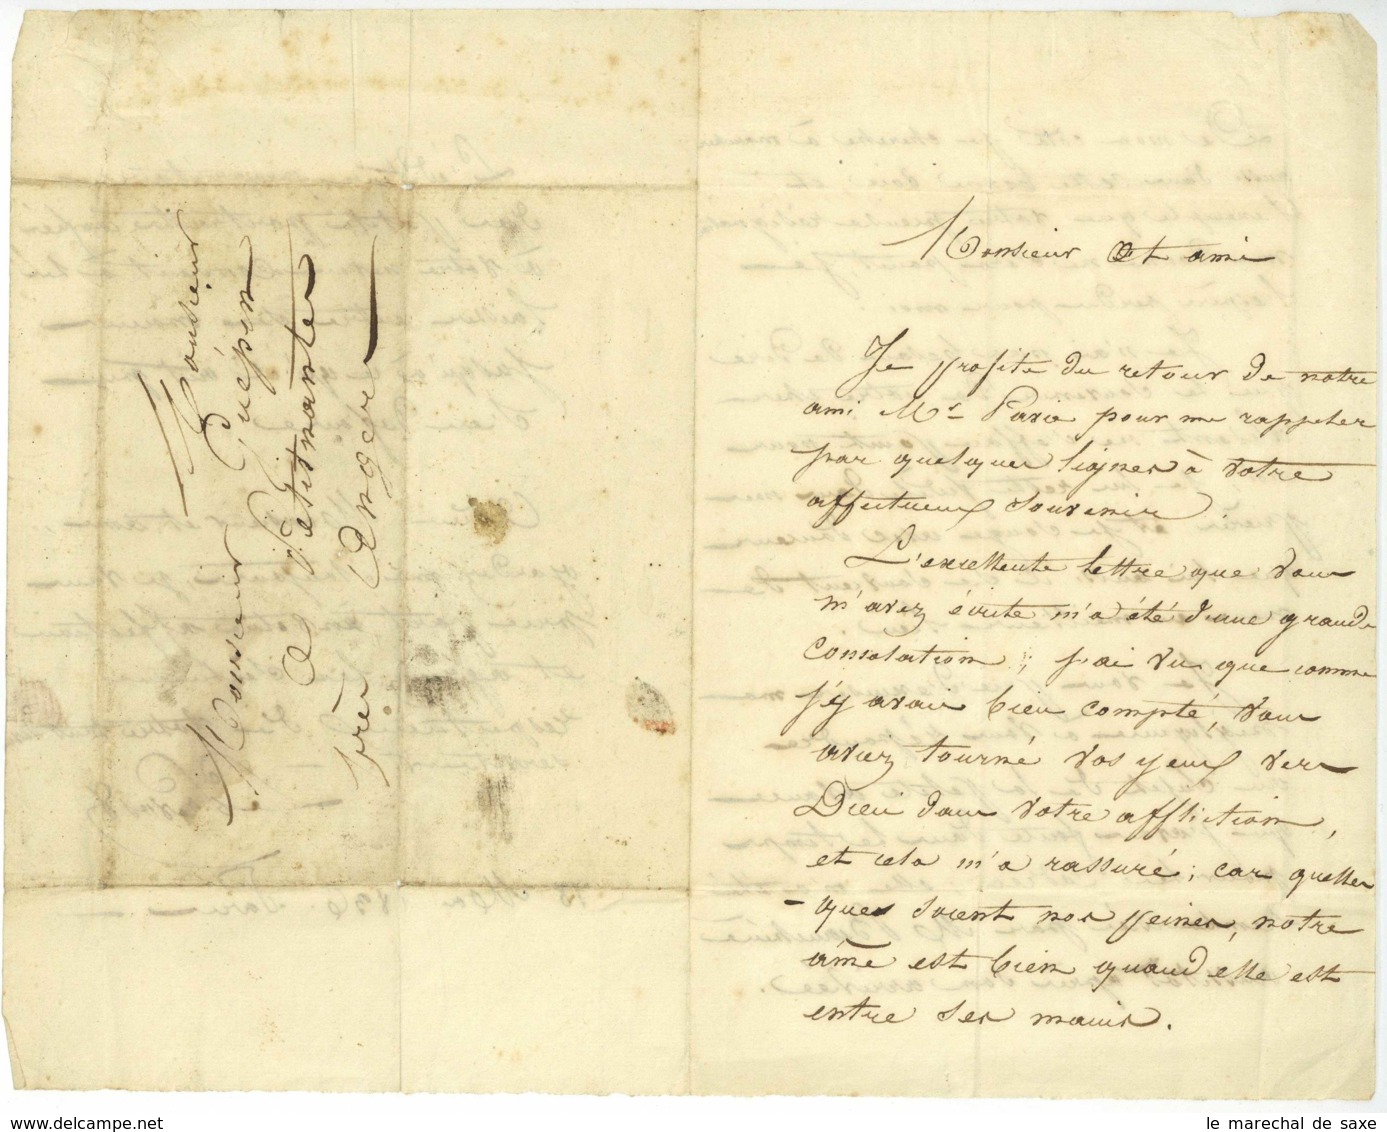 LE PREVOST LAS 1836 Paris Pour M GUEPIN A Petit Nantes Pres ANGERS - Manuscrits